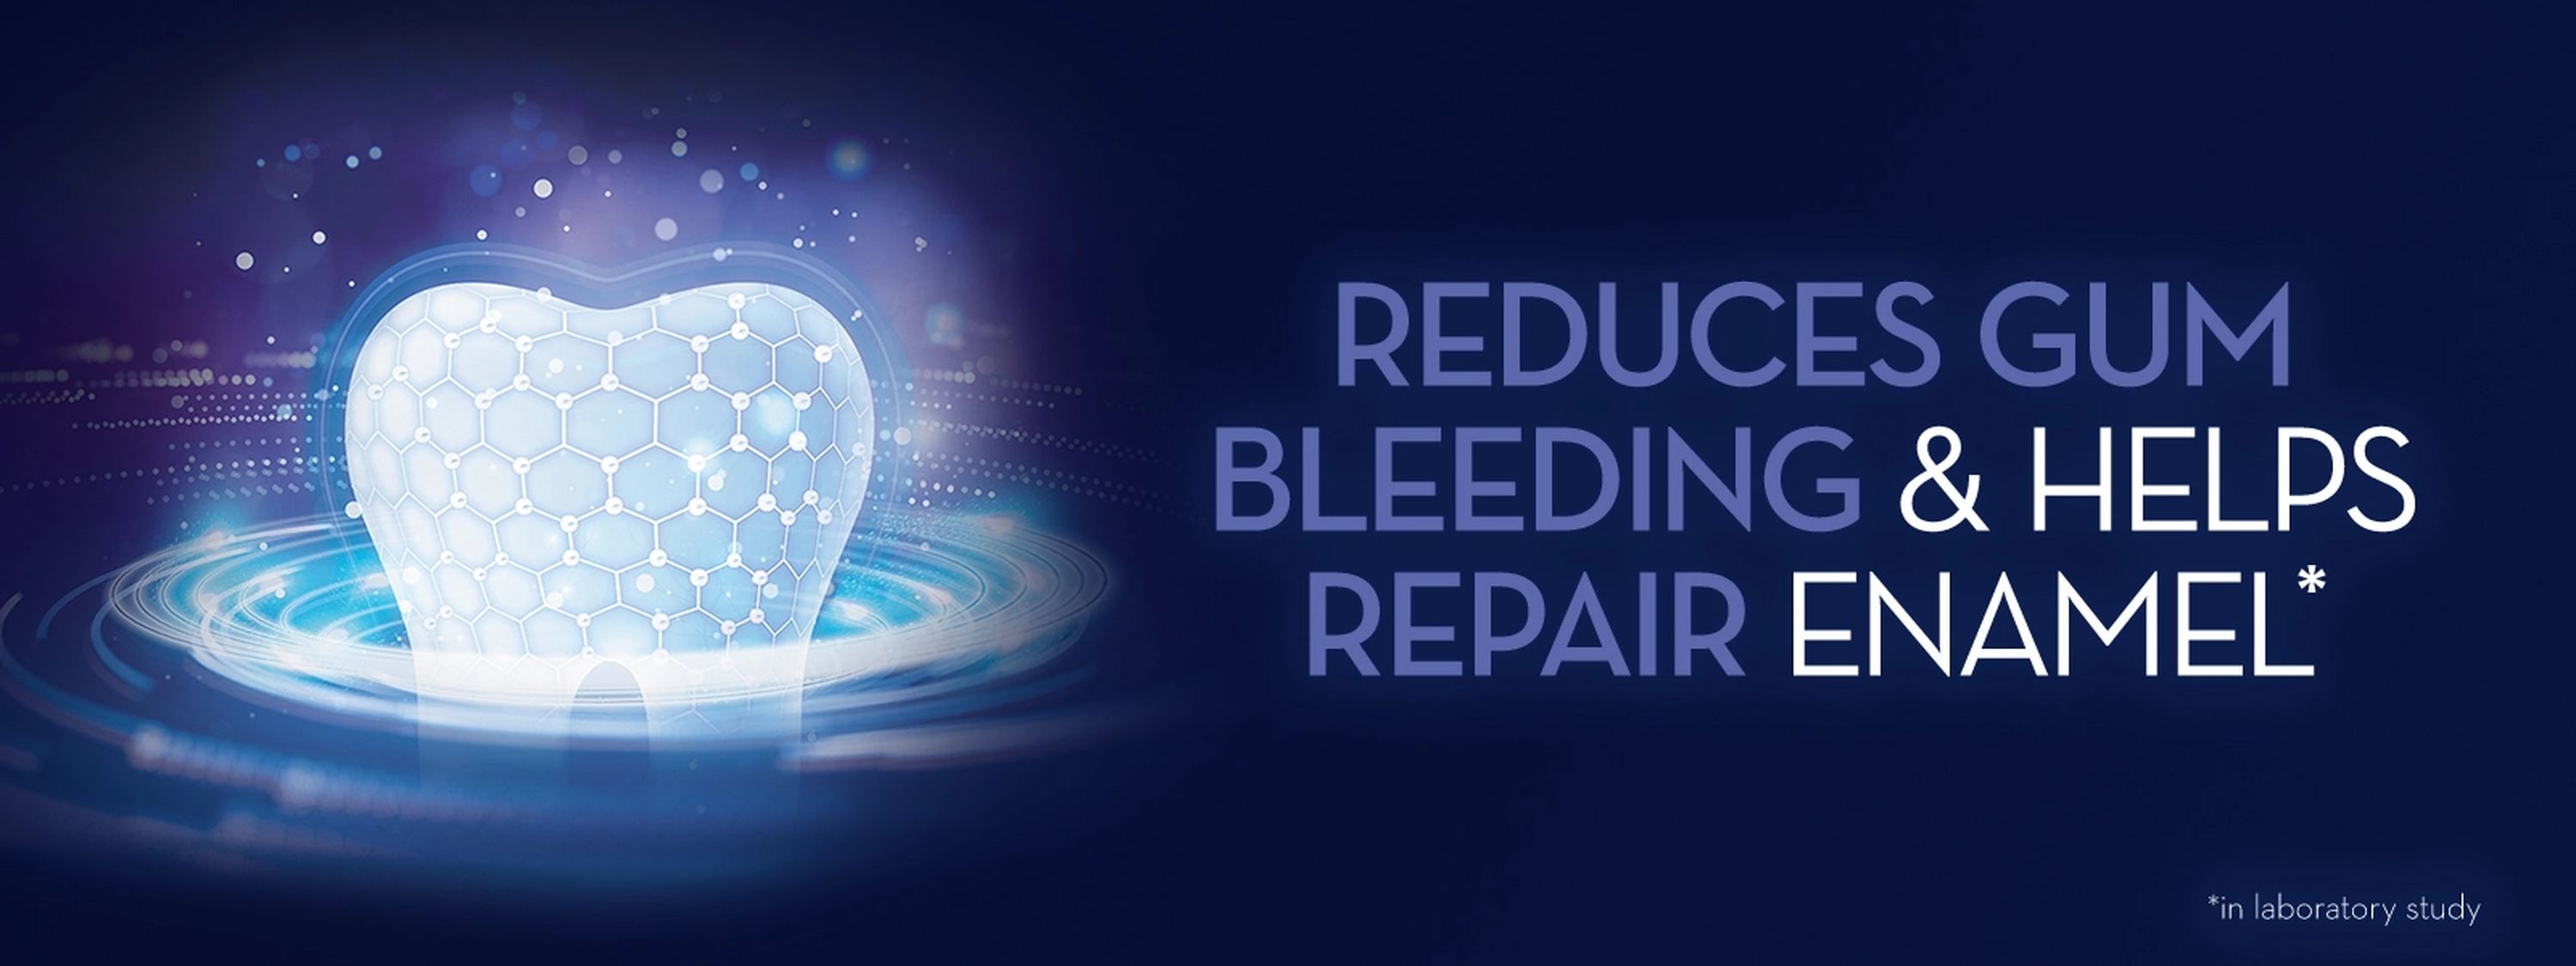 Reduces gum bleeding and helps repair enamel.